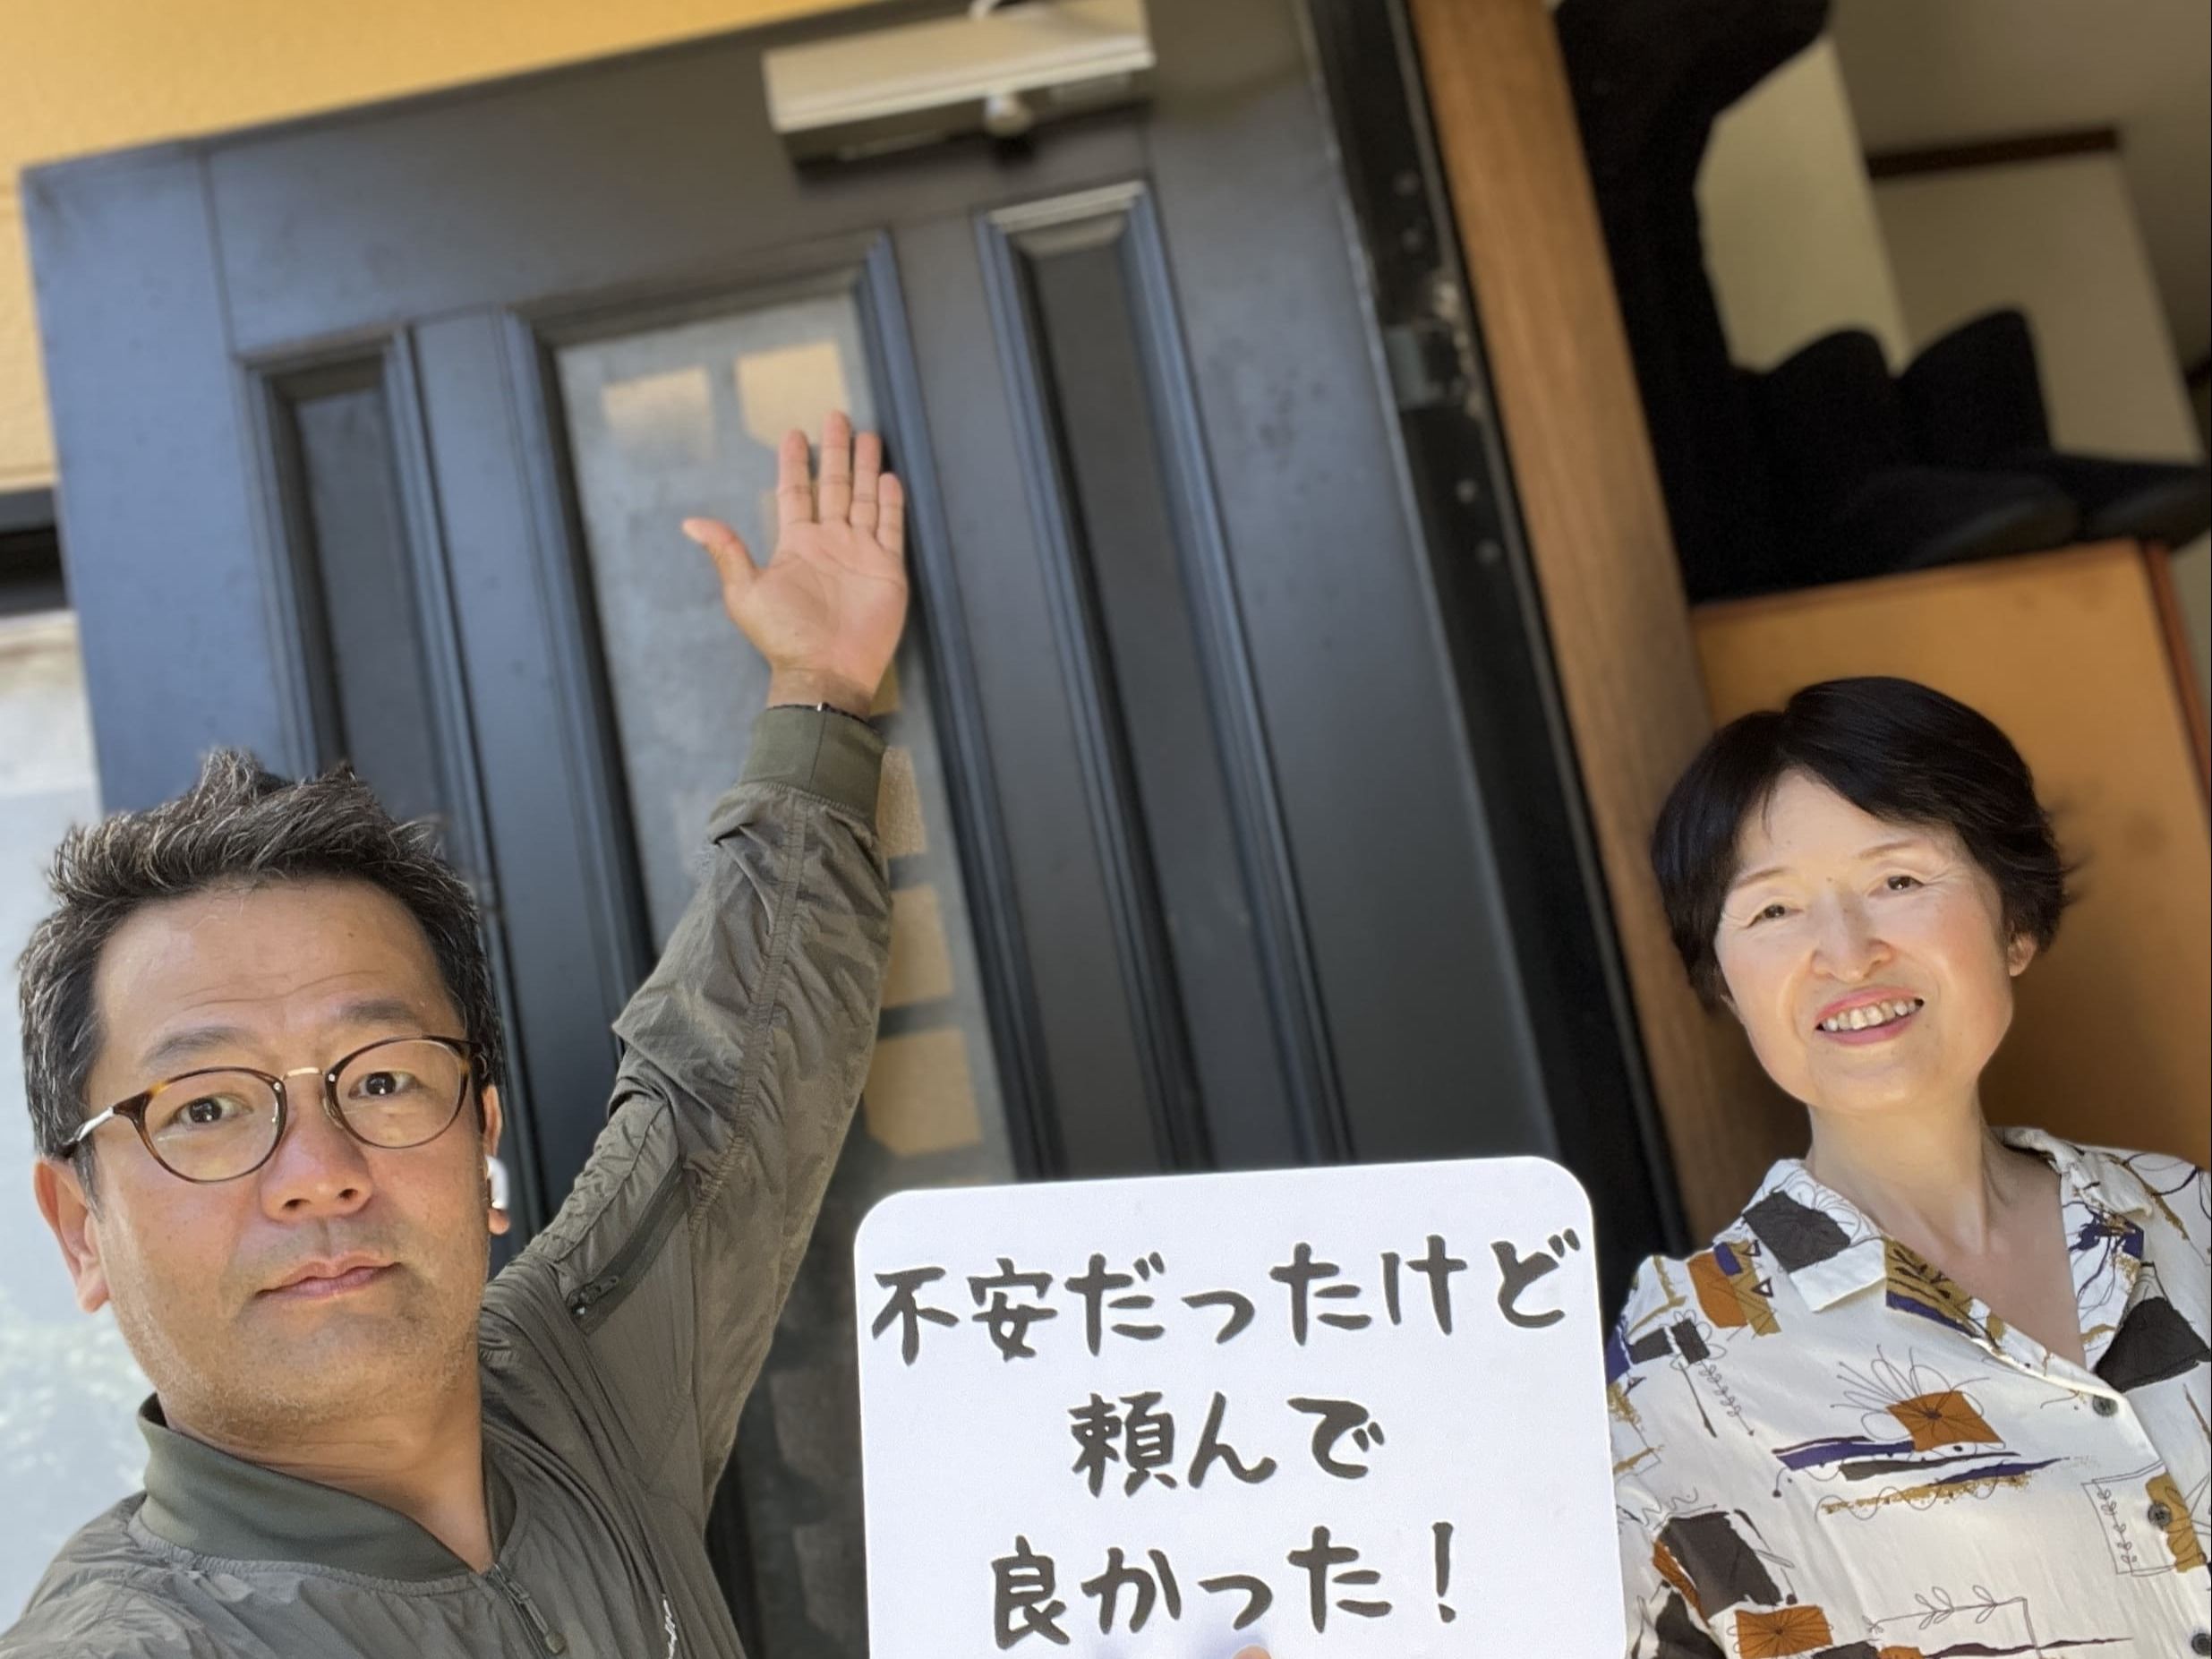 【富士見市地域】カギとドア修理コバヤシの店内・外観画像3